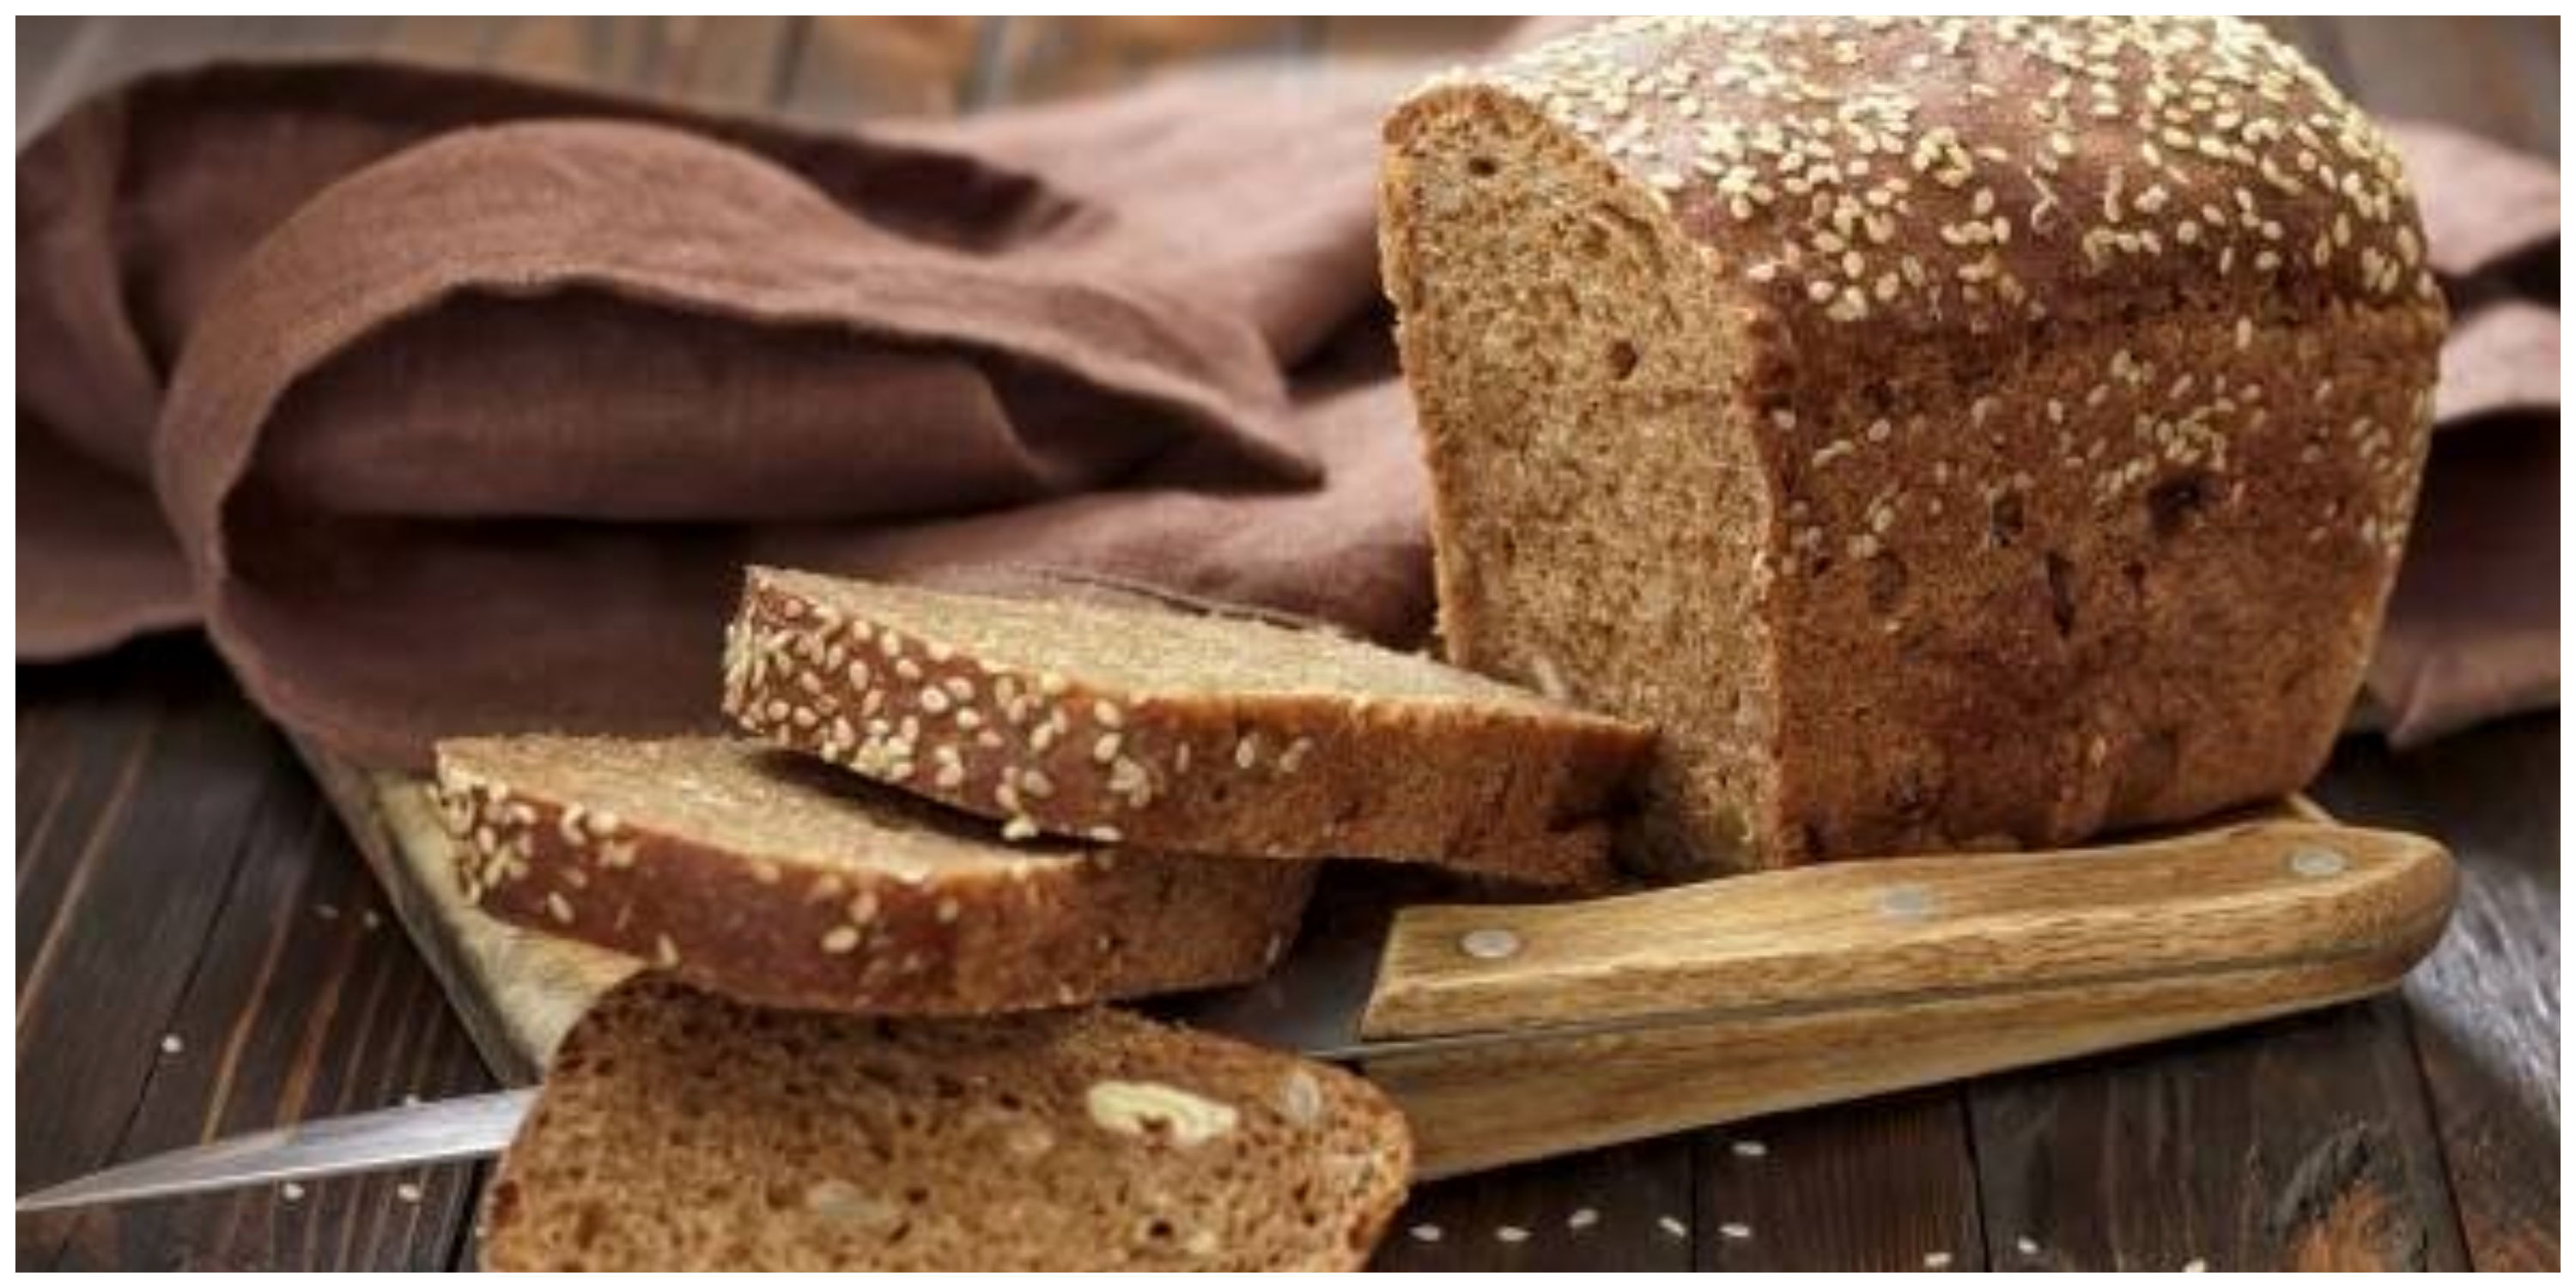 هشدار جدی درباره نگهداری نان در فریزر